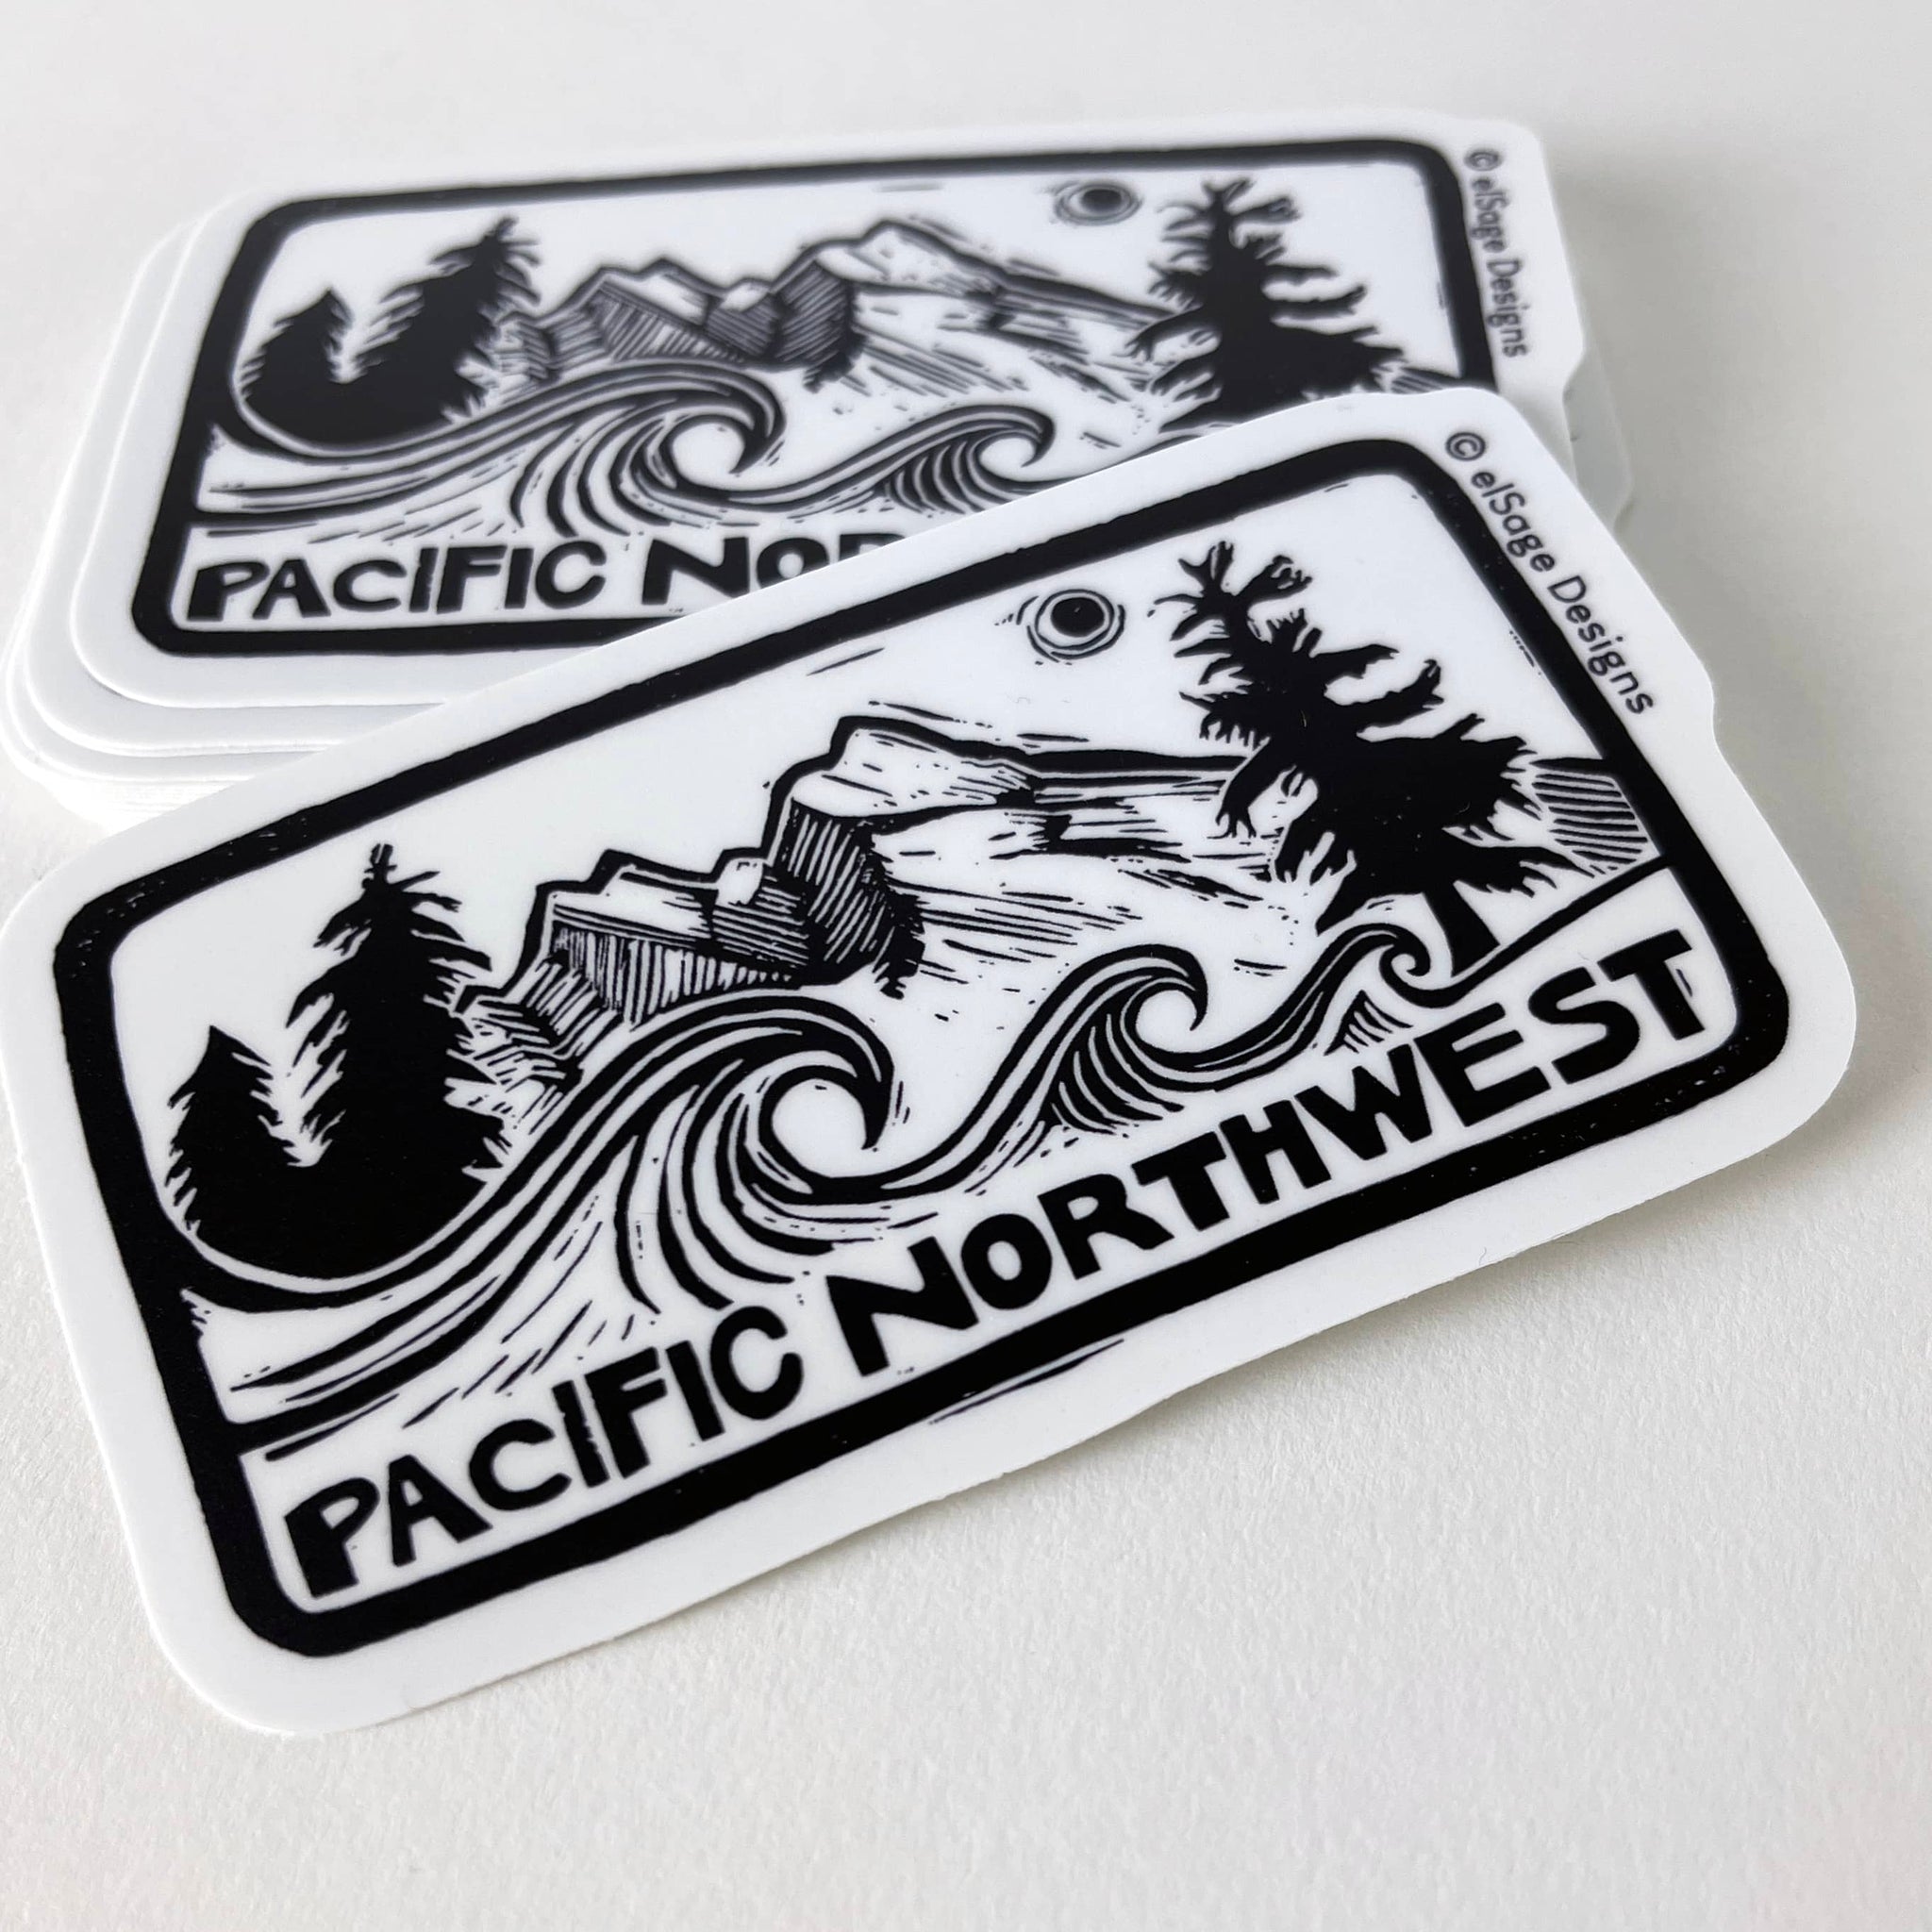 Pacific Northwest Vol. 2 sticker